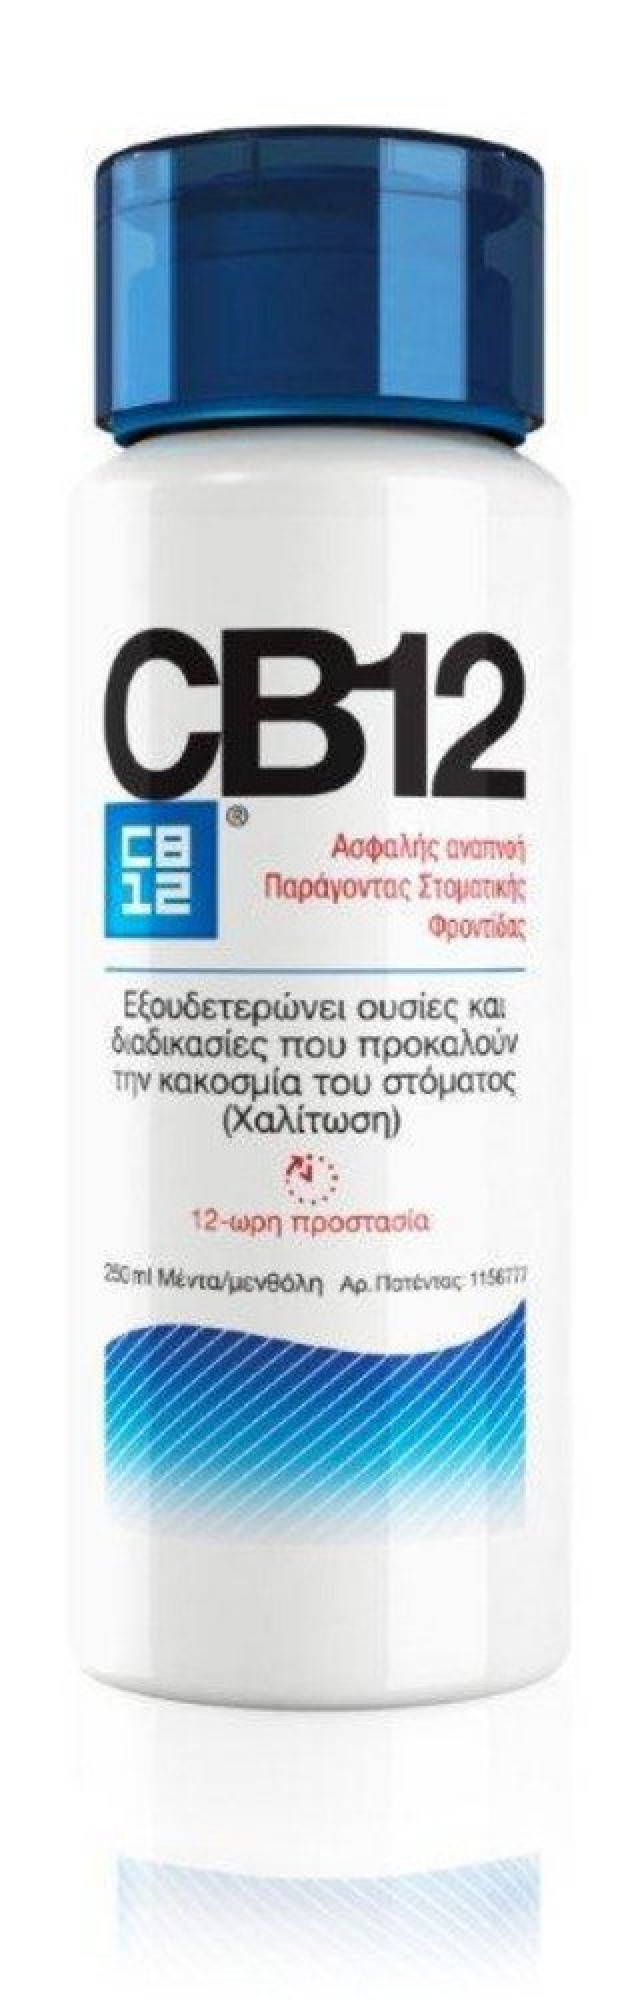 CB12 Ασφαλής Αναπνοή- Στοματική Φροντίδα, 250ml